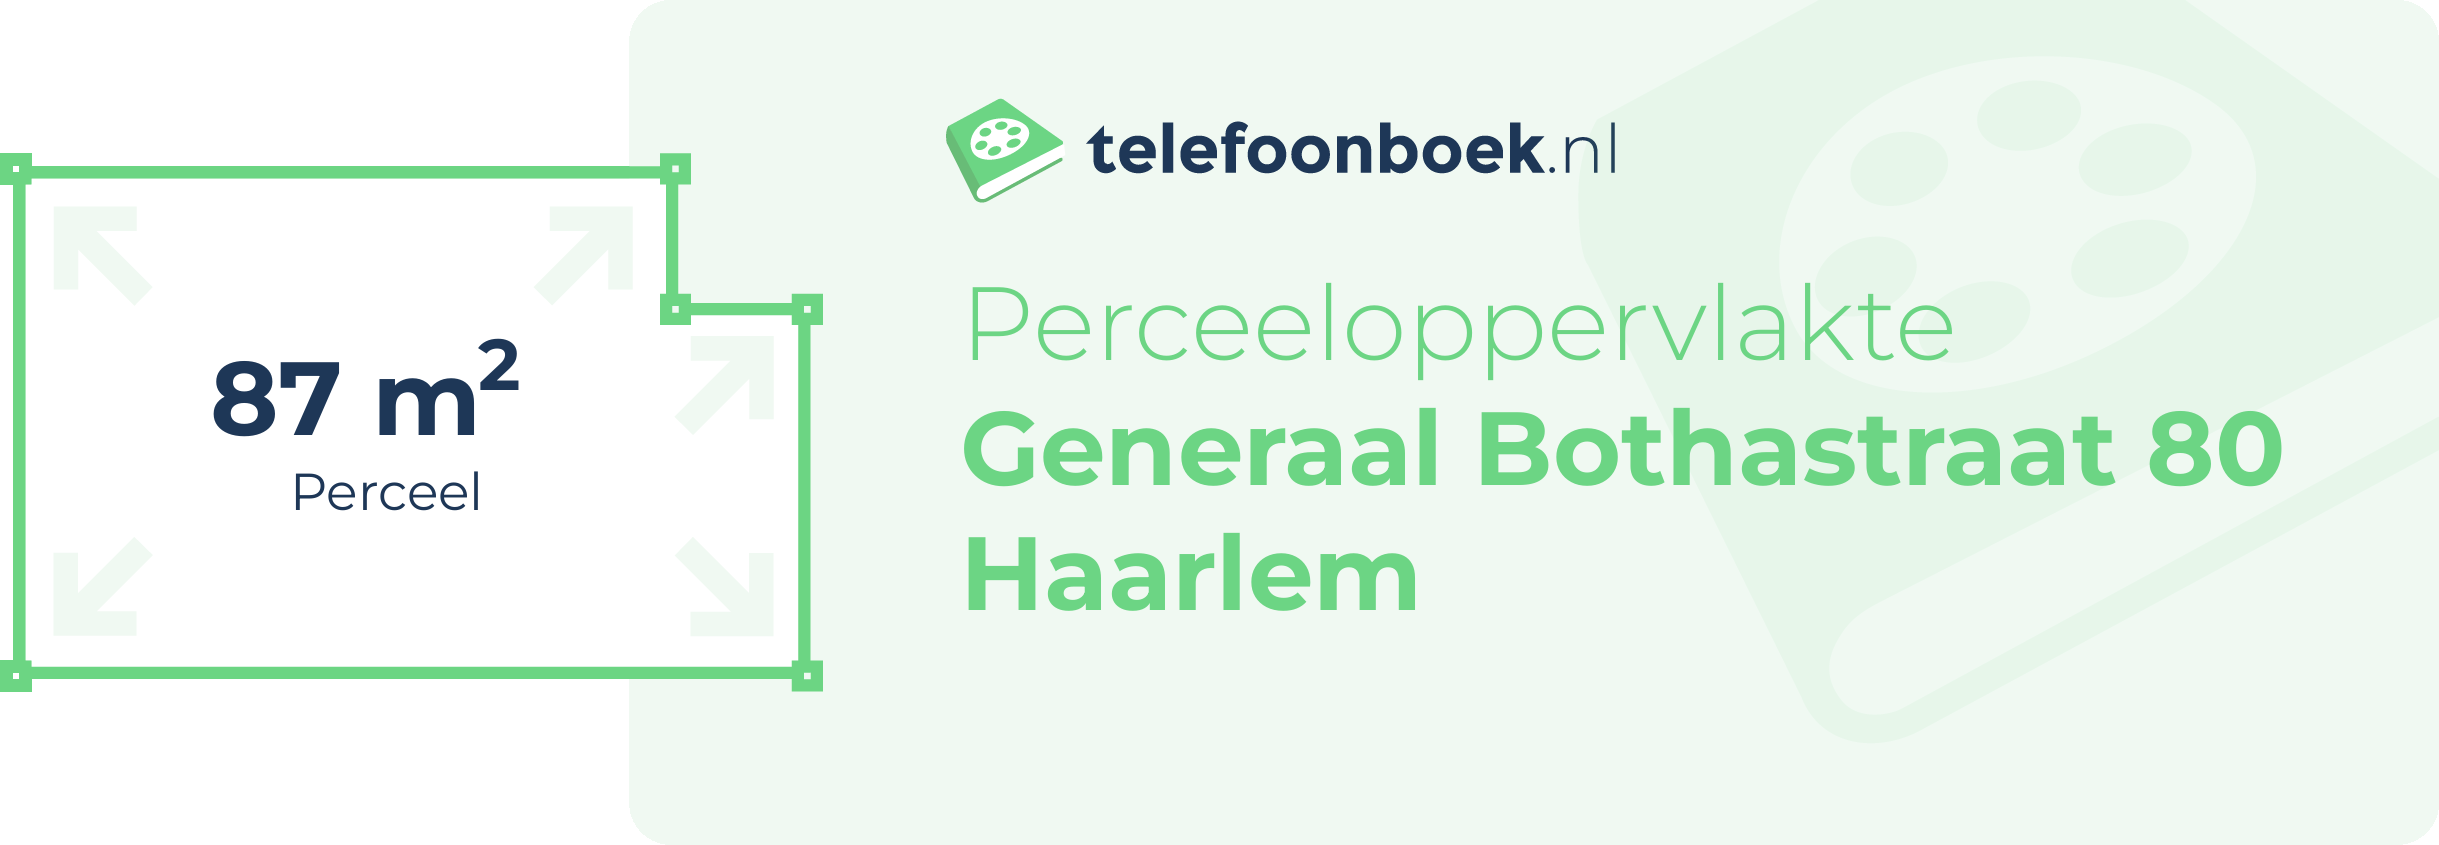 Perceeloppervlakte Generaal Bothastraat 80 Haarlem